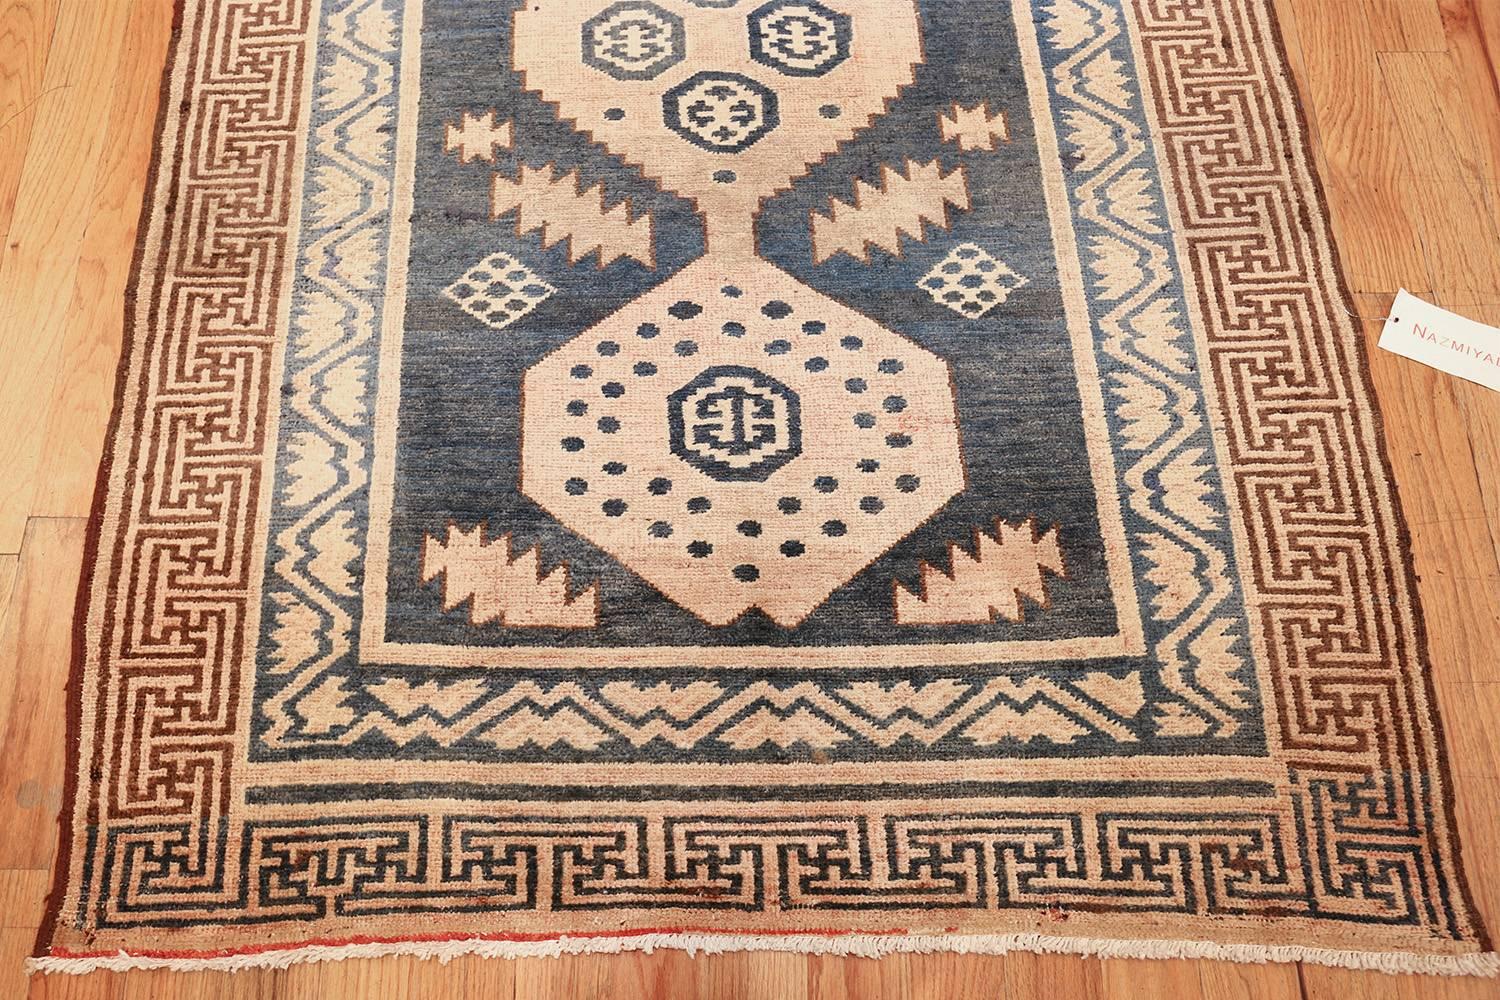 Wool Nazmiyal Collection Antique Khotan Runner Carpet. Size: 4 ft x 11 ft 